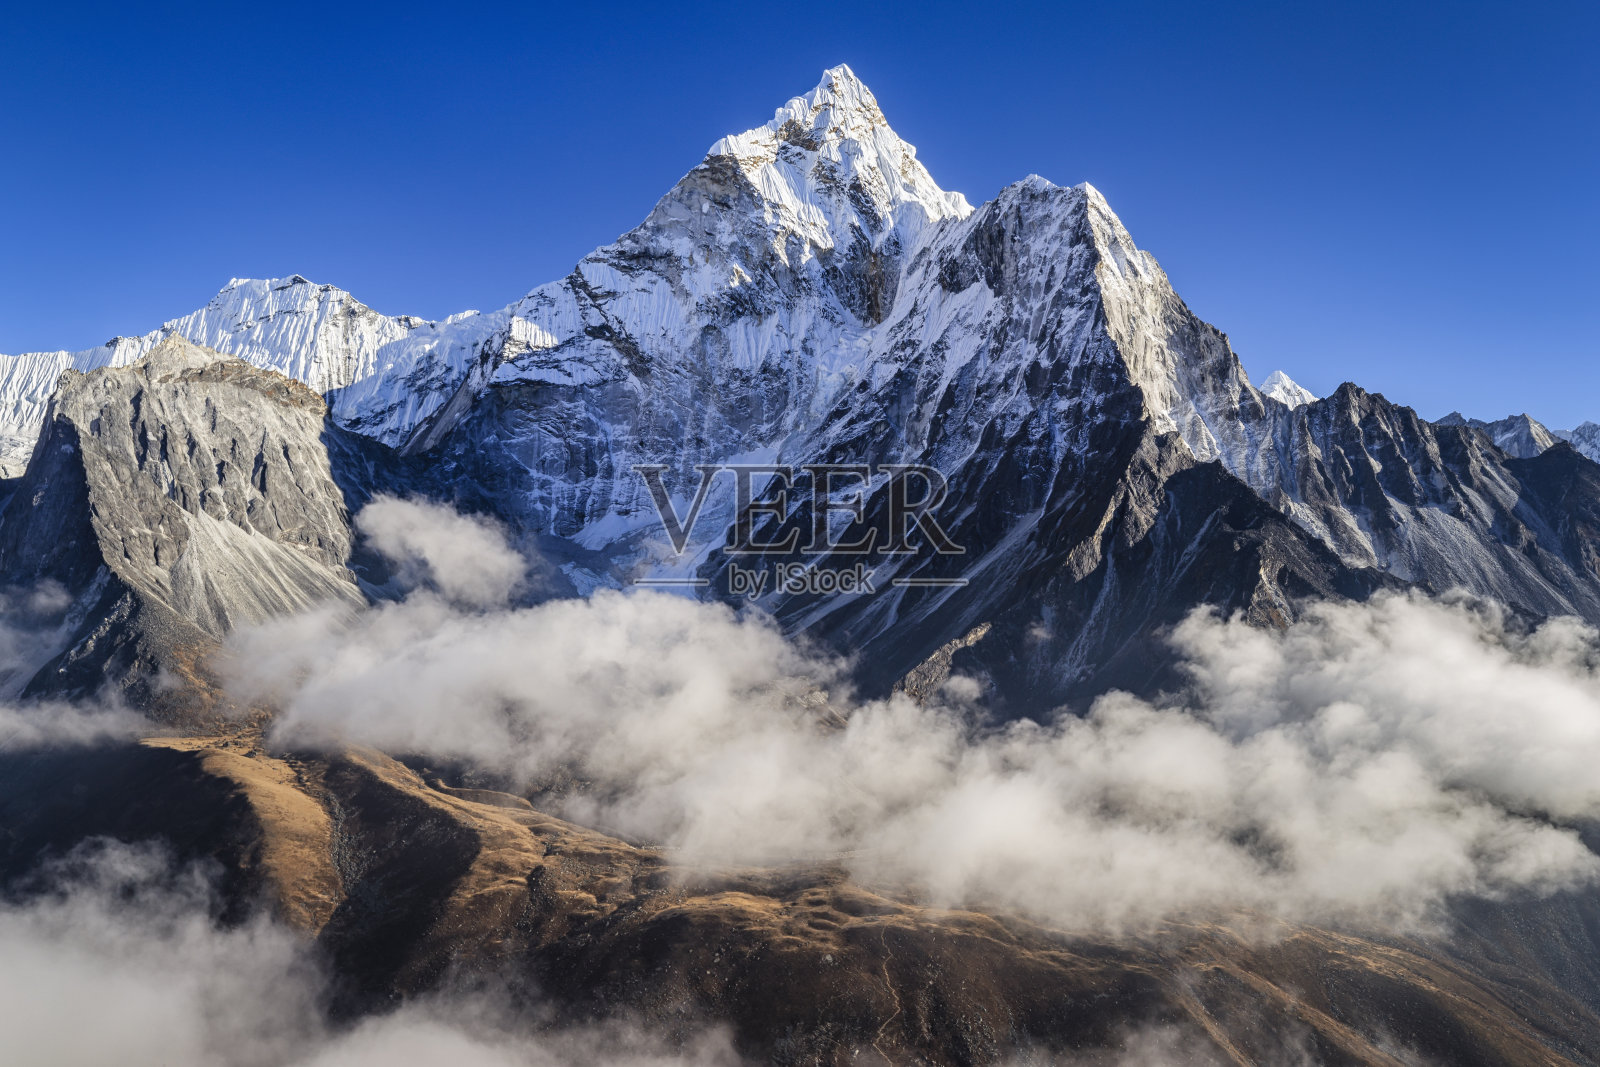 尼泊尔喜马拉雅山上美丽的阿玛达布拉姆山全景图照片摄影图片